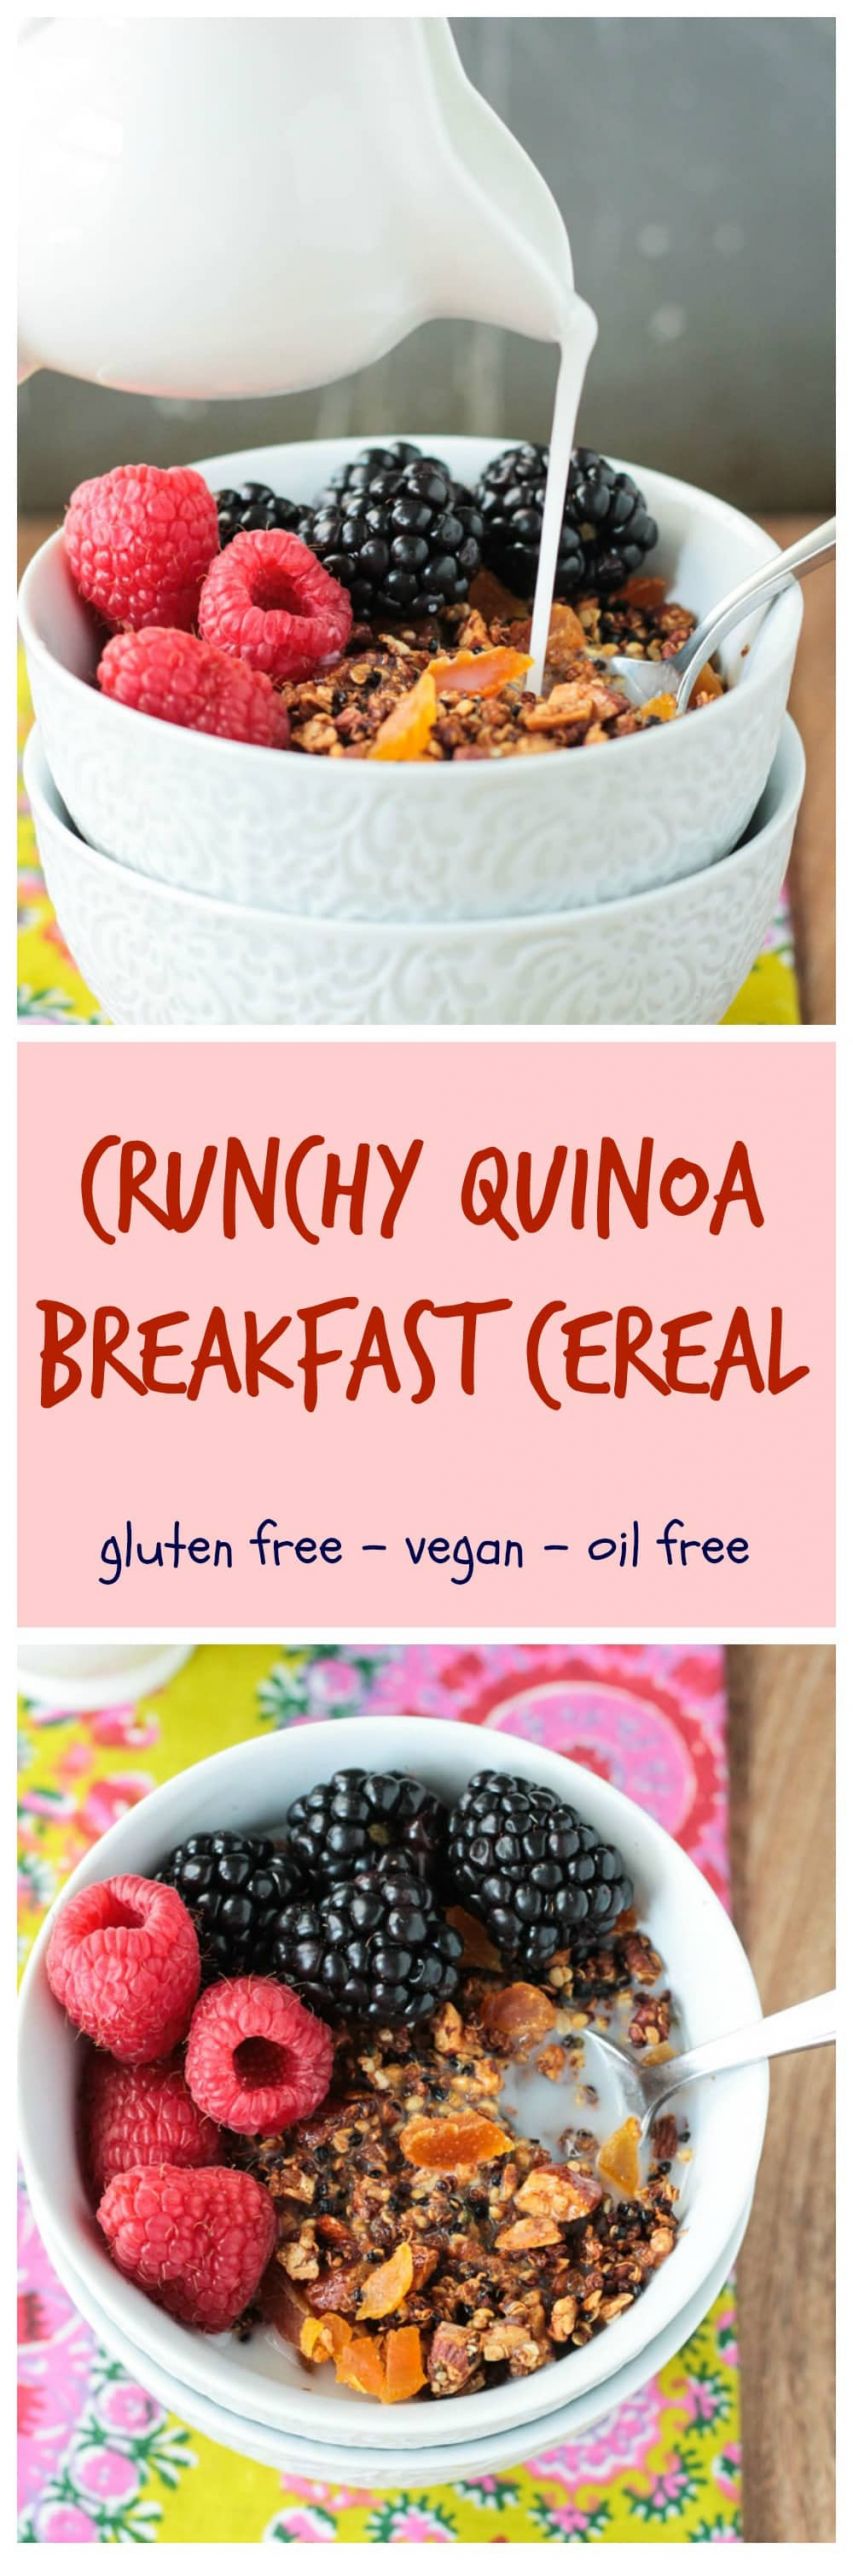 Quinoa Breakfast Cereal
 Crunchy Quinoa Breakfast Cereal Gluten Free Veggie